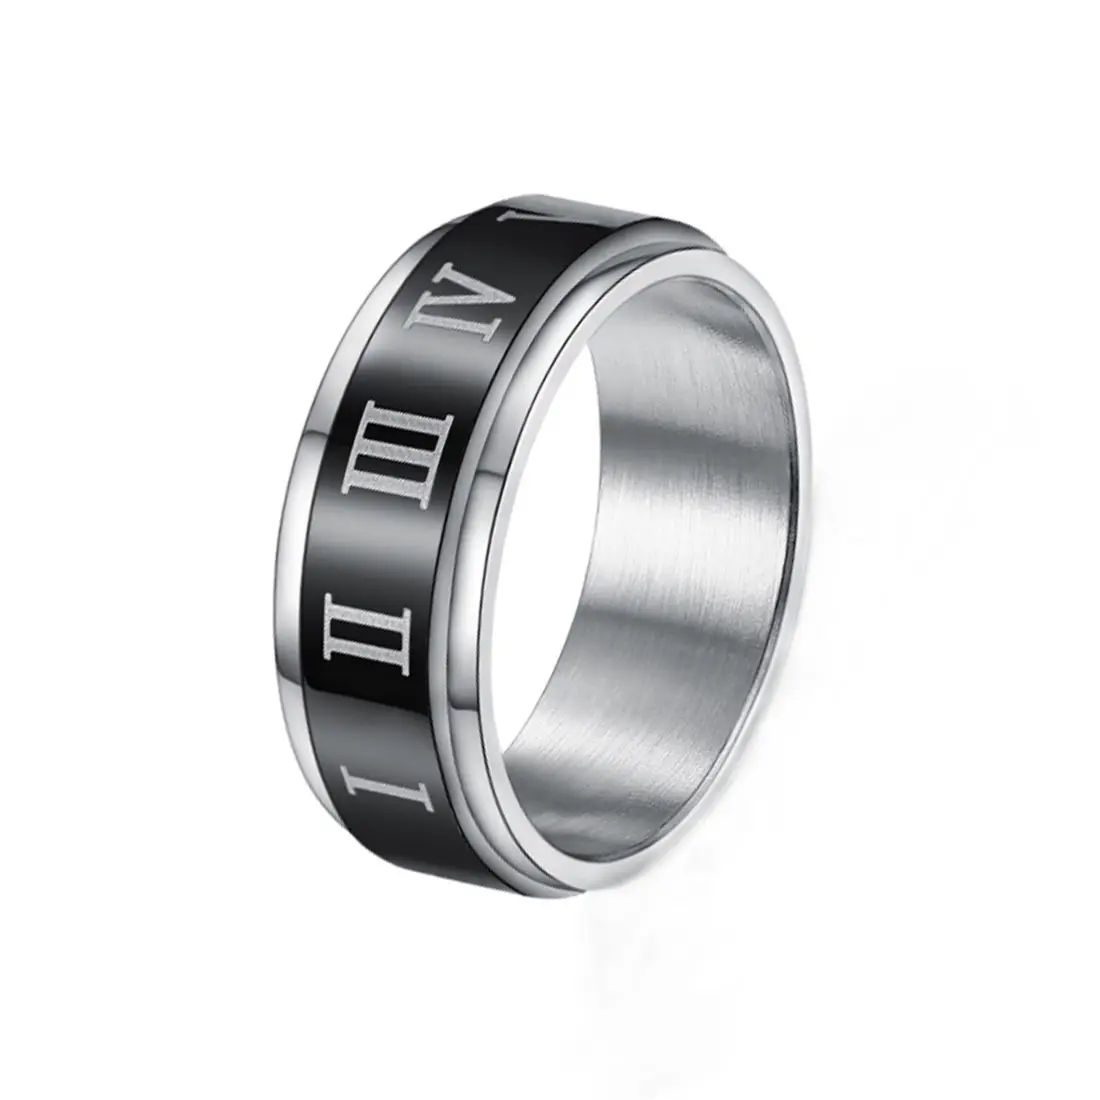 Cool ring Silver Finish Razor Ring Rotating Chain Ring Unisex Ring Gothic Ring Techwear Ring eBoy Ring Mens Ring Fidget Ring